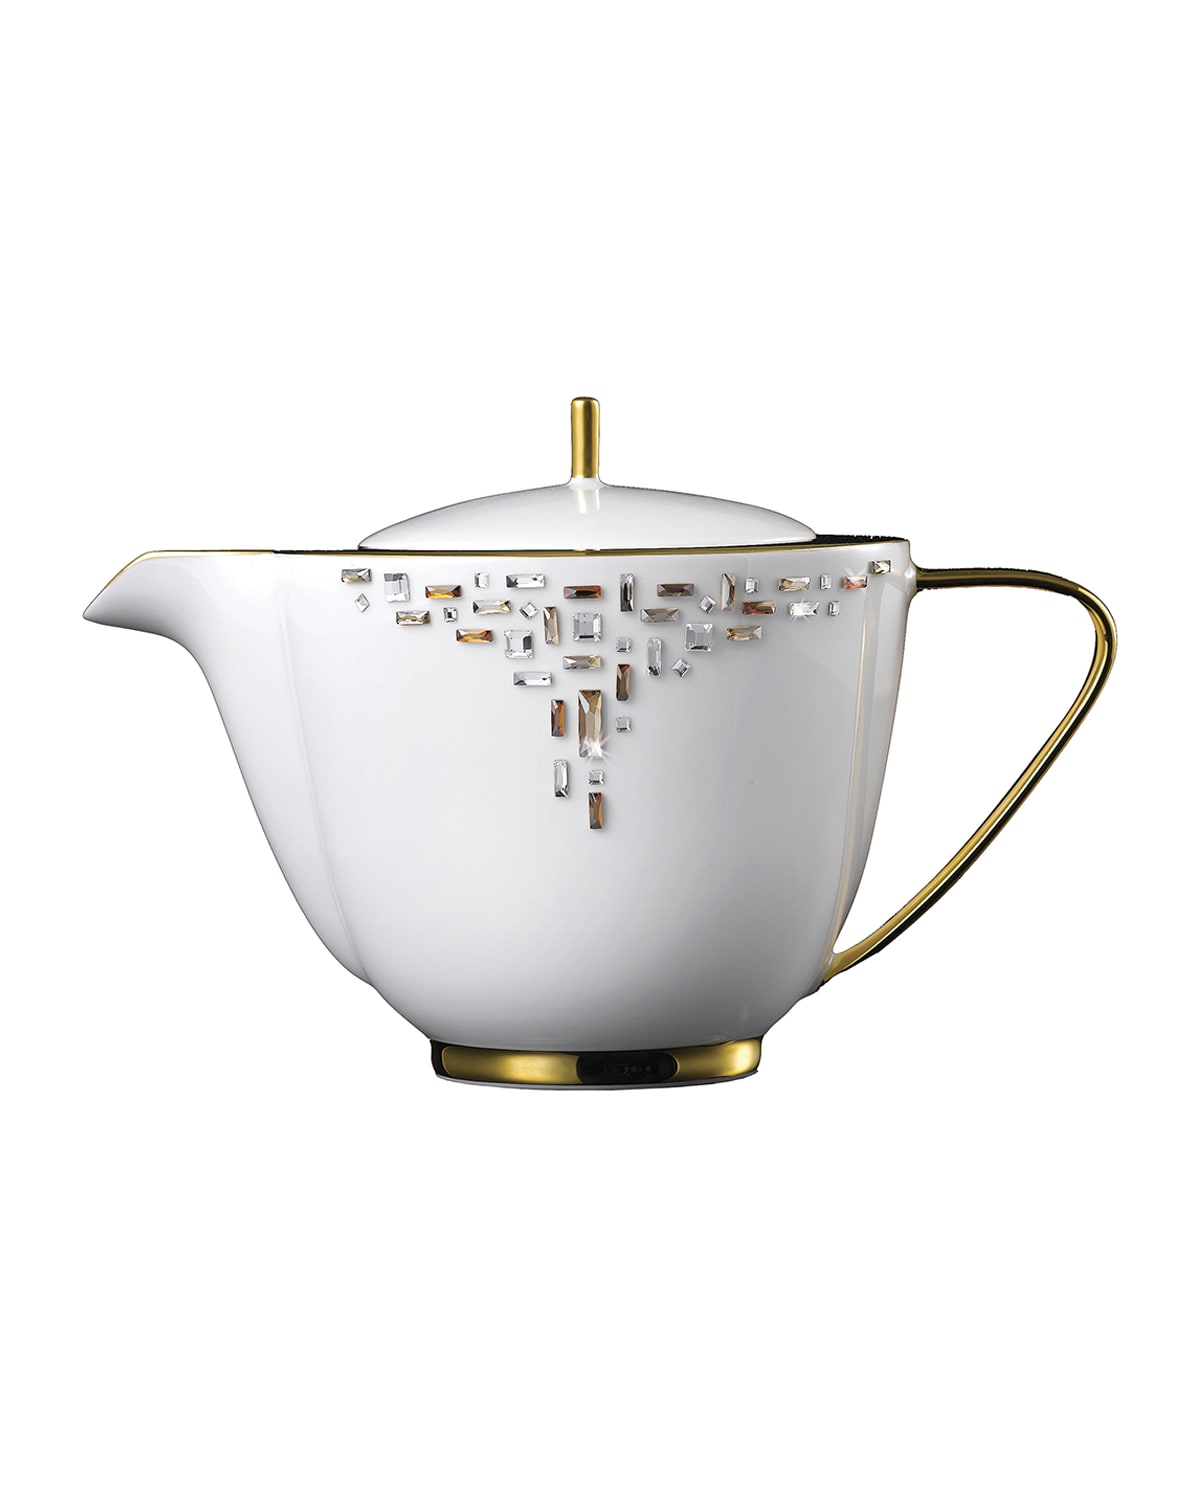 Prouna Diana Teapot In Gold